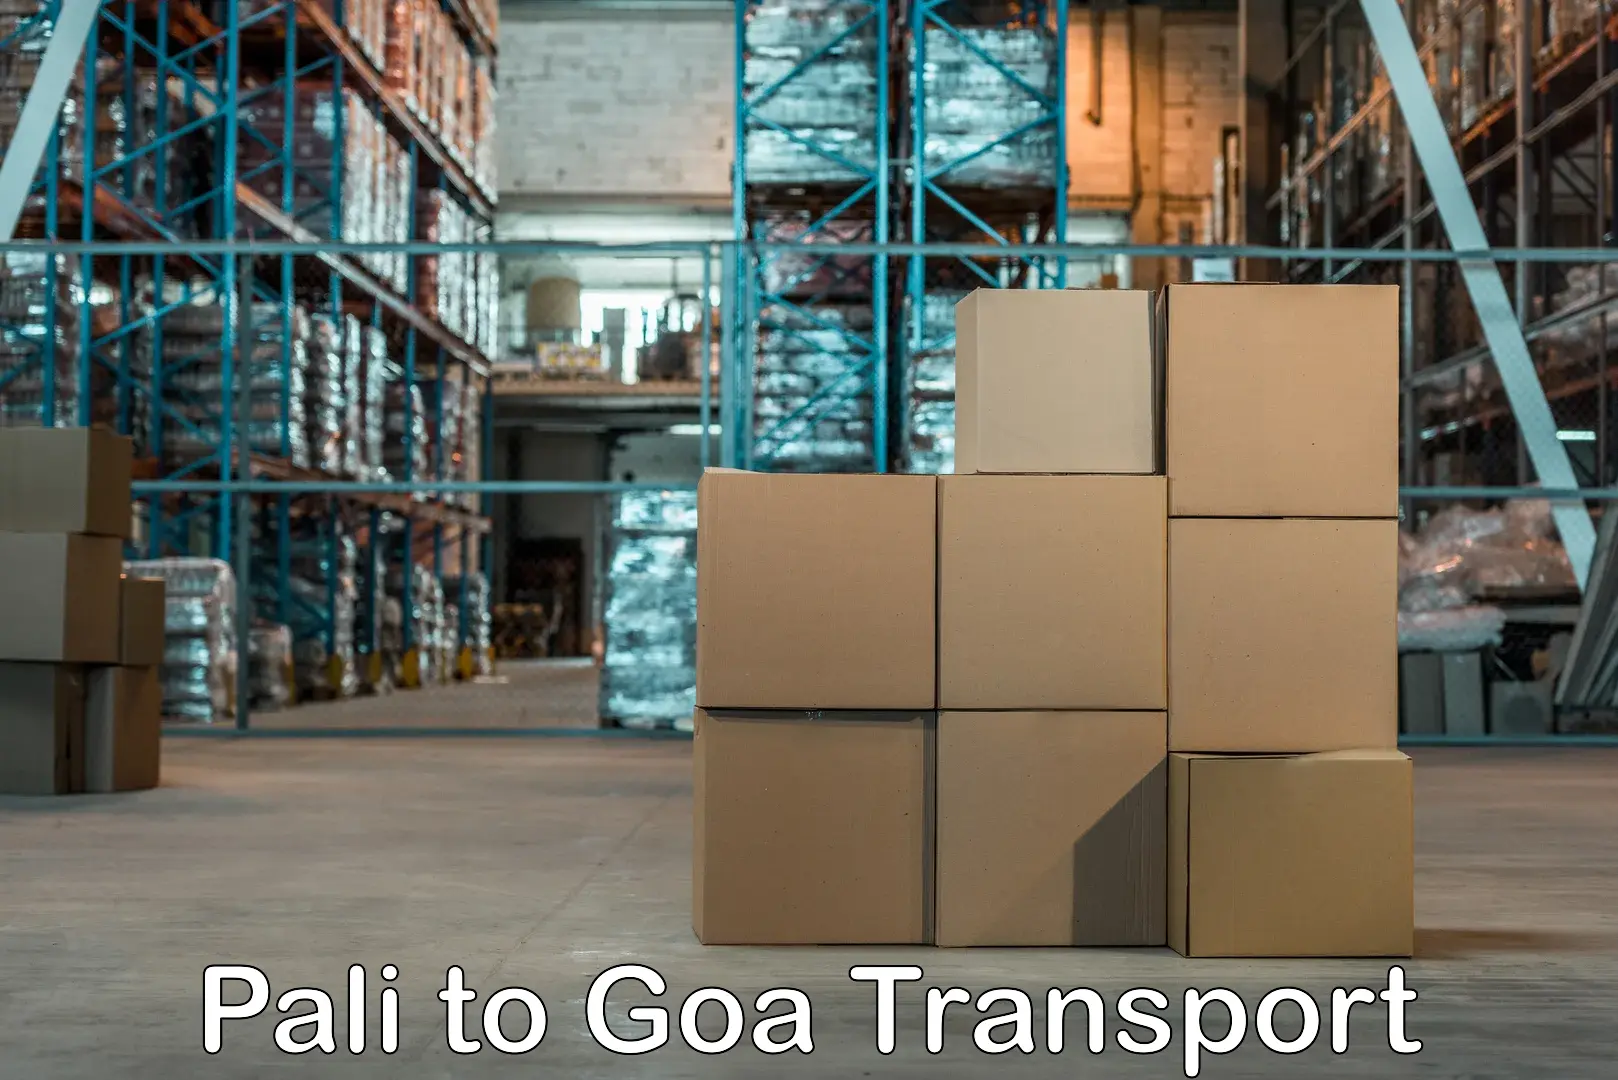 Scooty parcel Pali to IIT Goa